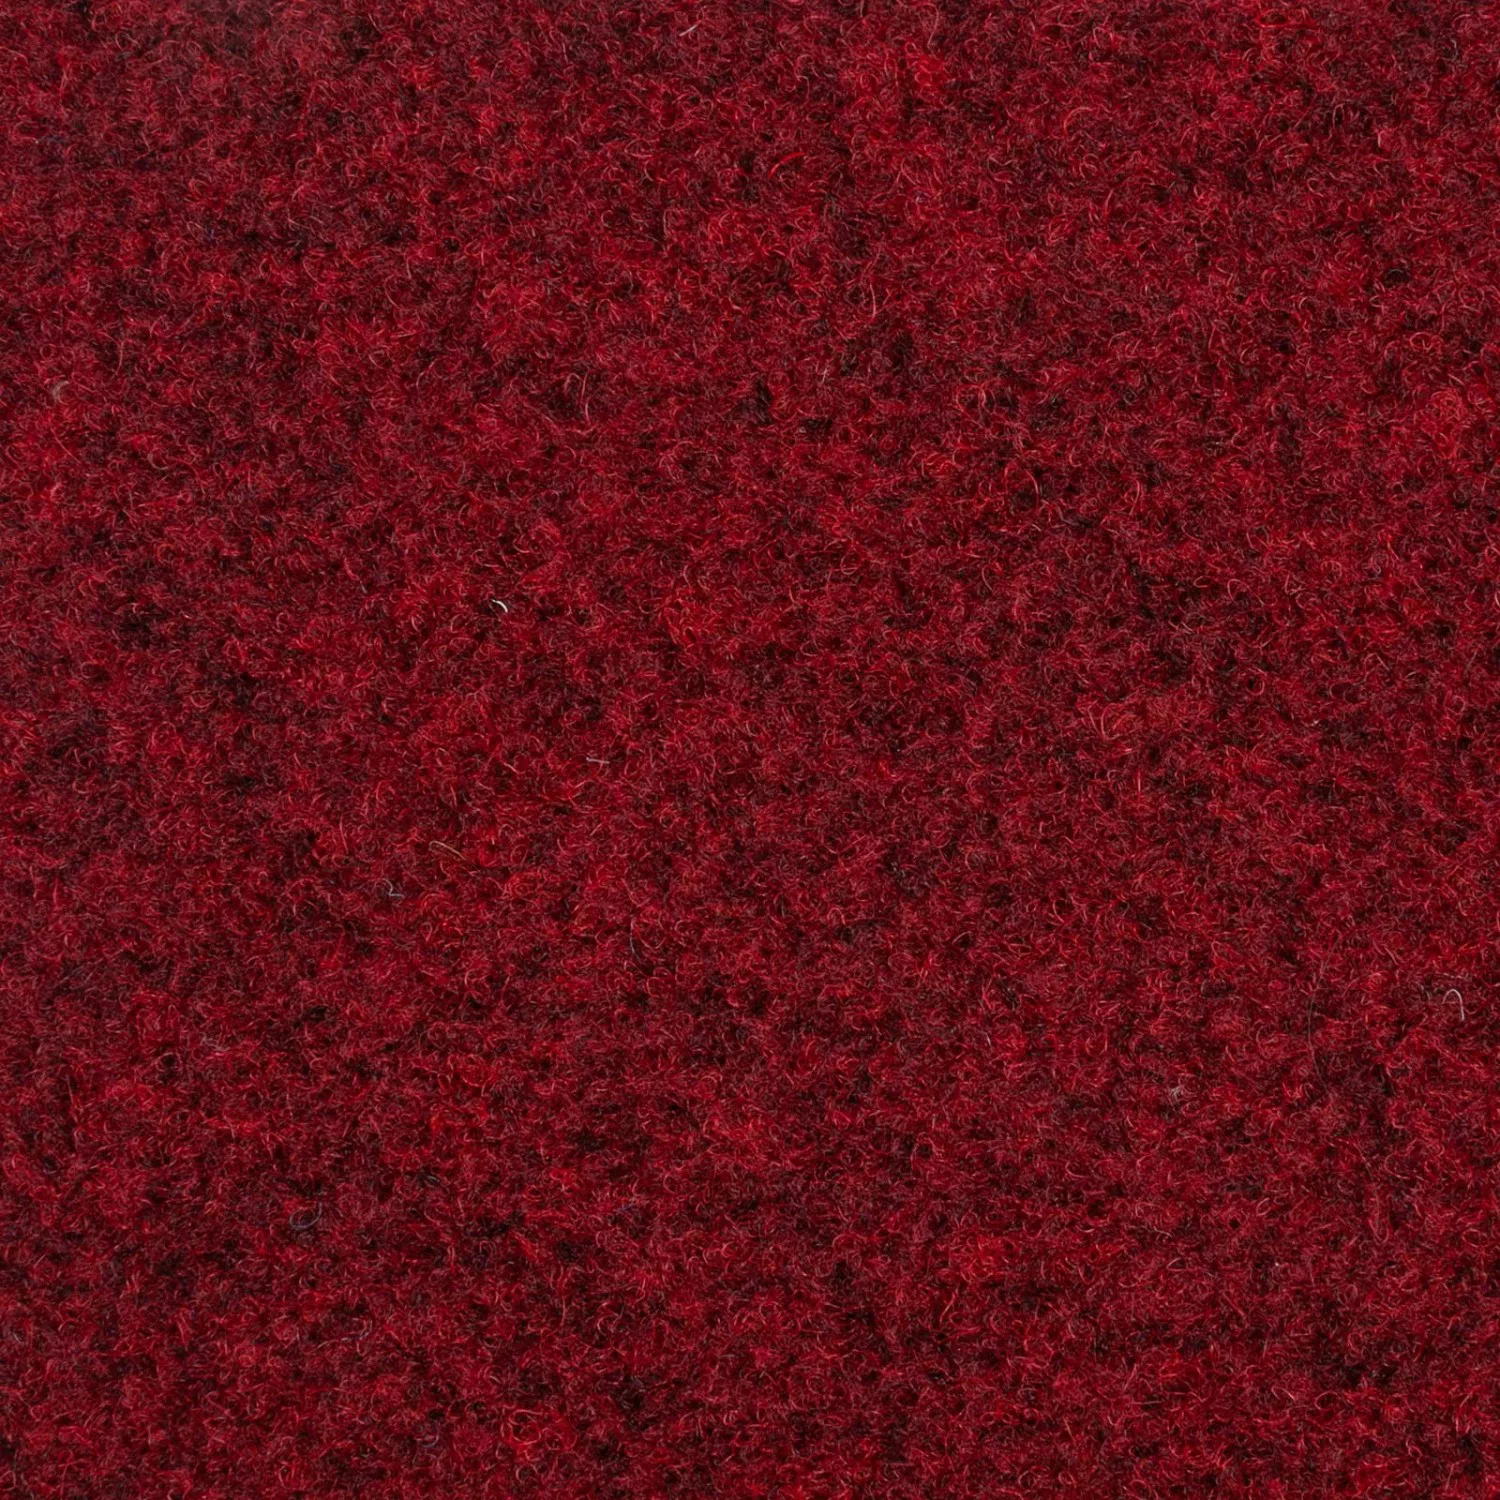 Schatex Nadelfilz Teppich Fliesen In 50x50 Cm Nadelvlies Teppichfliesen Rot günstig online kaufen